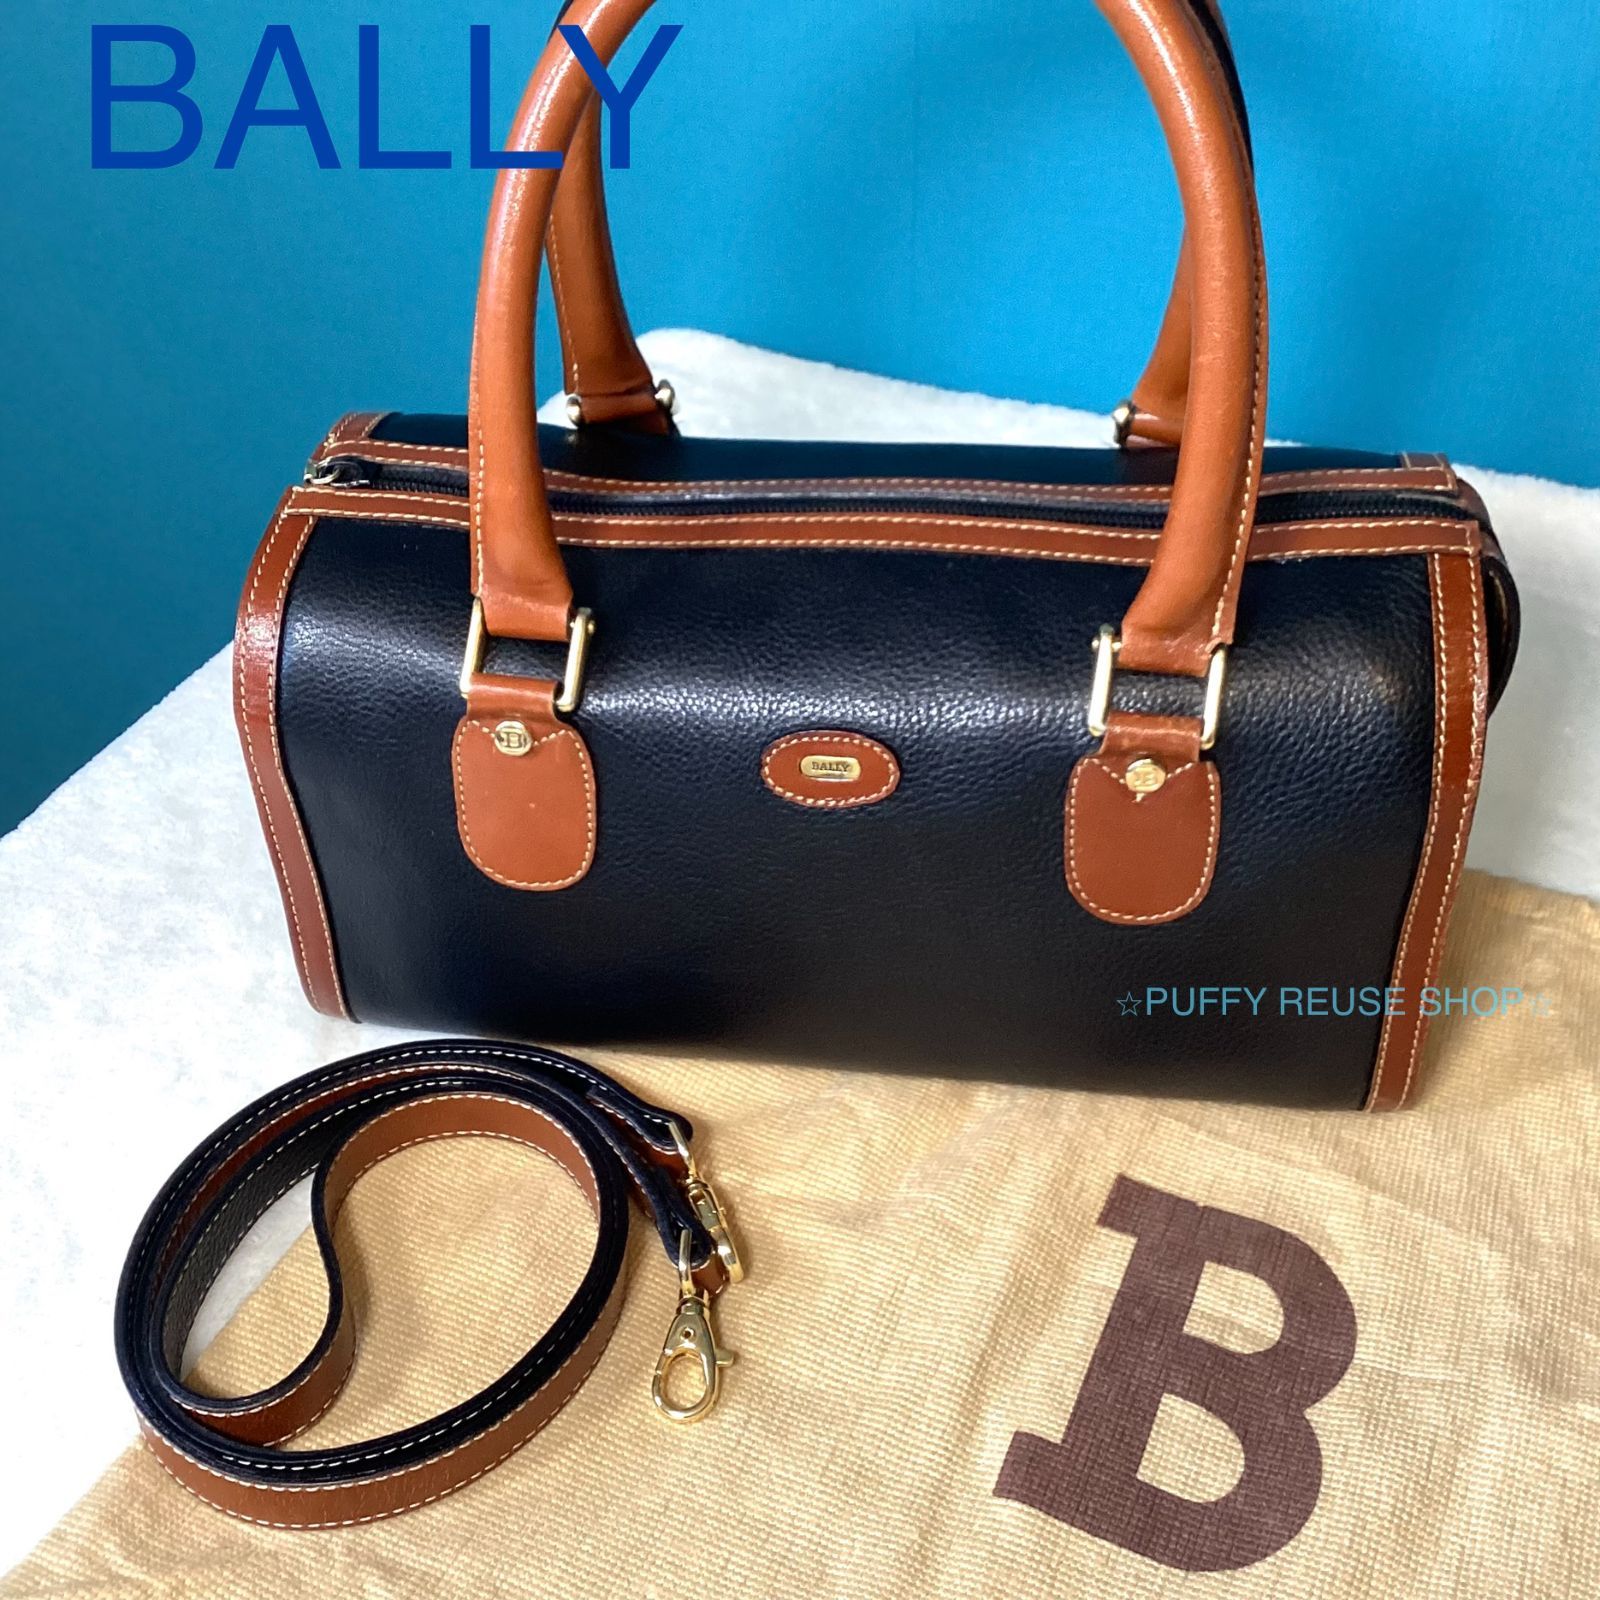 バリー BALLY ミニボストンバッグ 保存袋付き ハンドバッグ レザー 